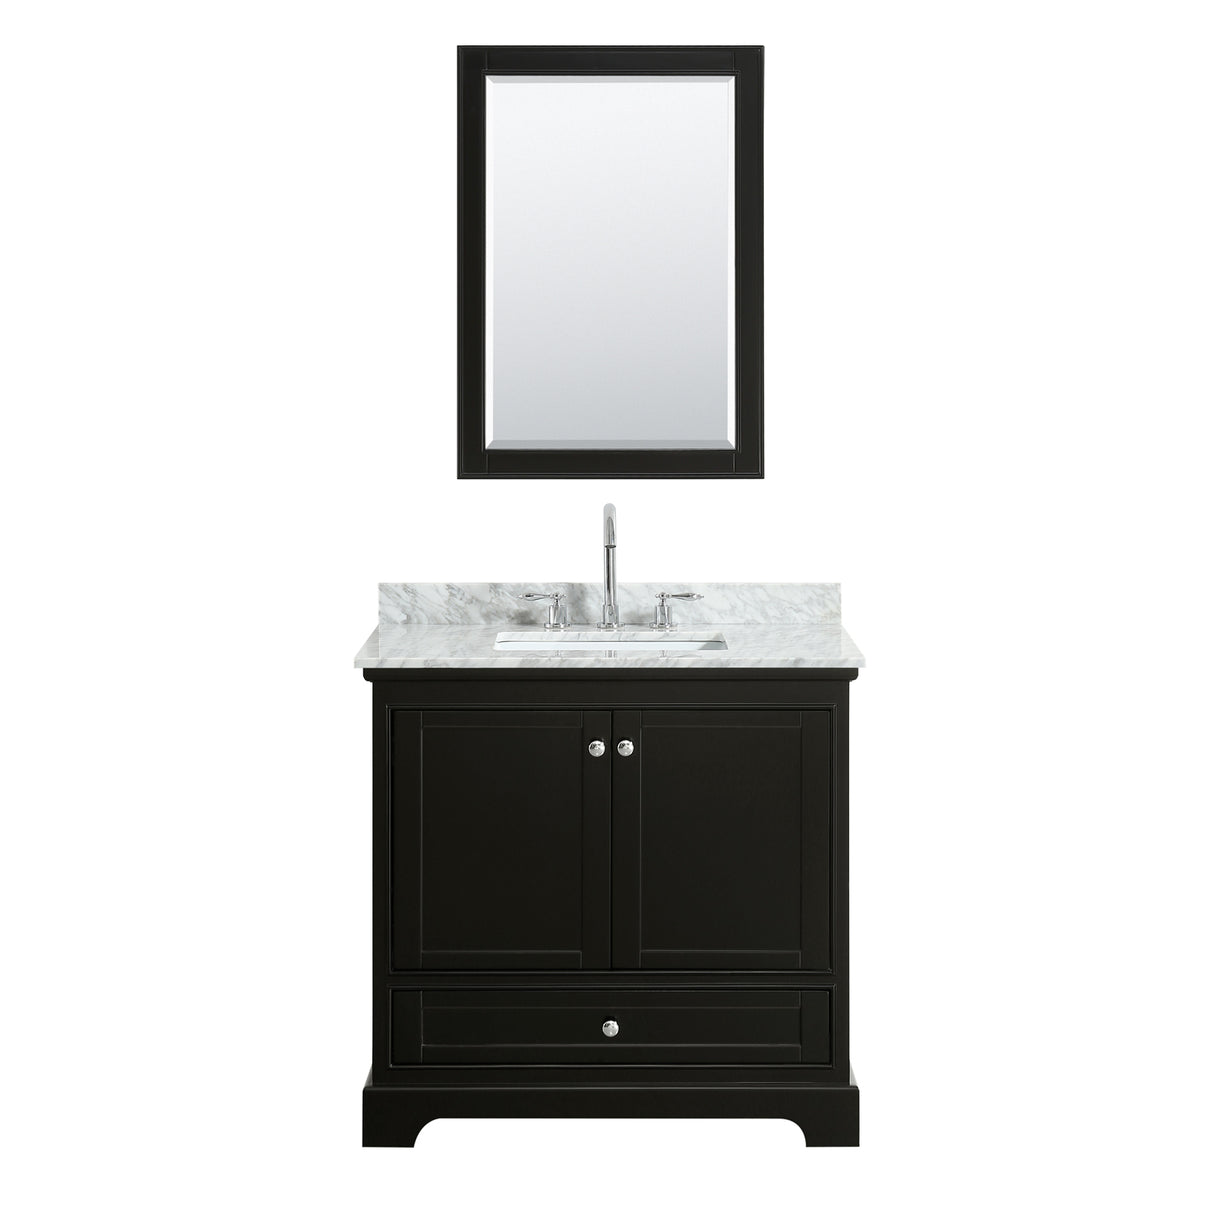 Deborah 36 Inch Single Bathroom Vanity in Dark Espresso White Carrara Marble Countertop Undermount Square Sink and Medicine Cabinet